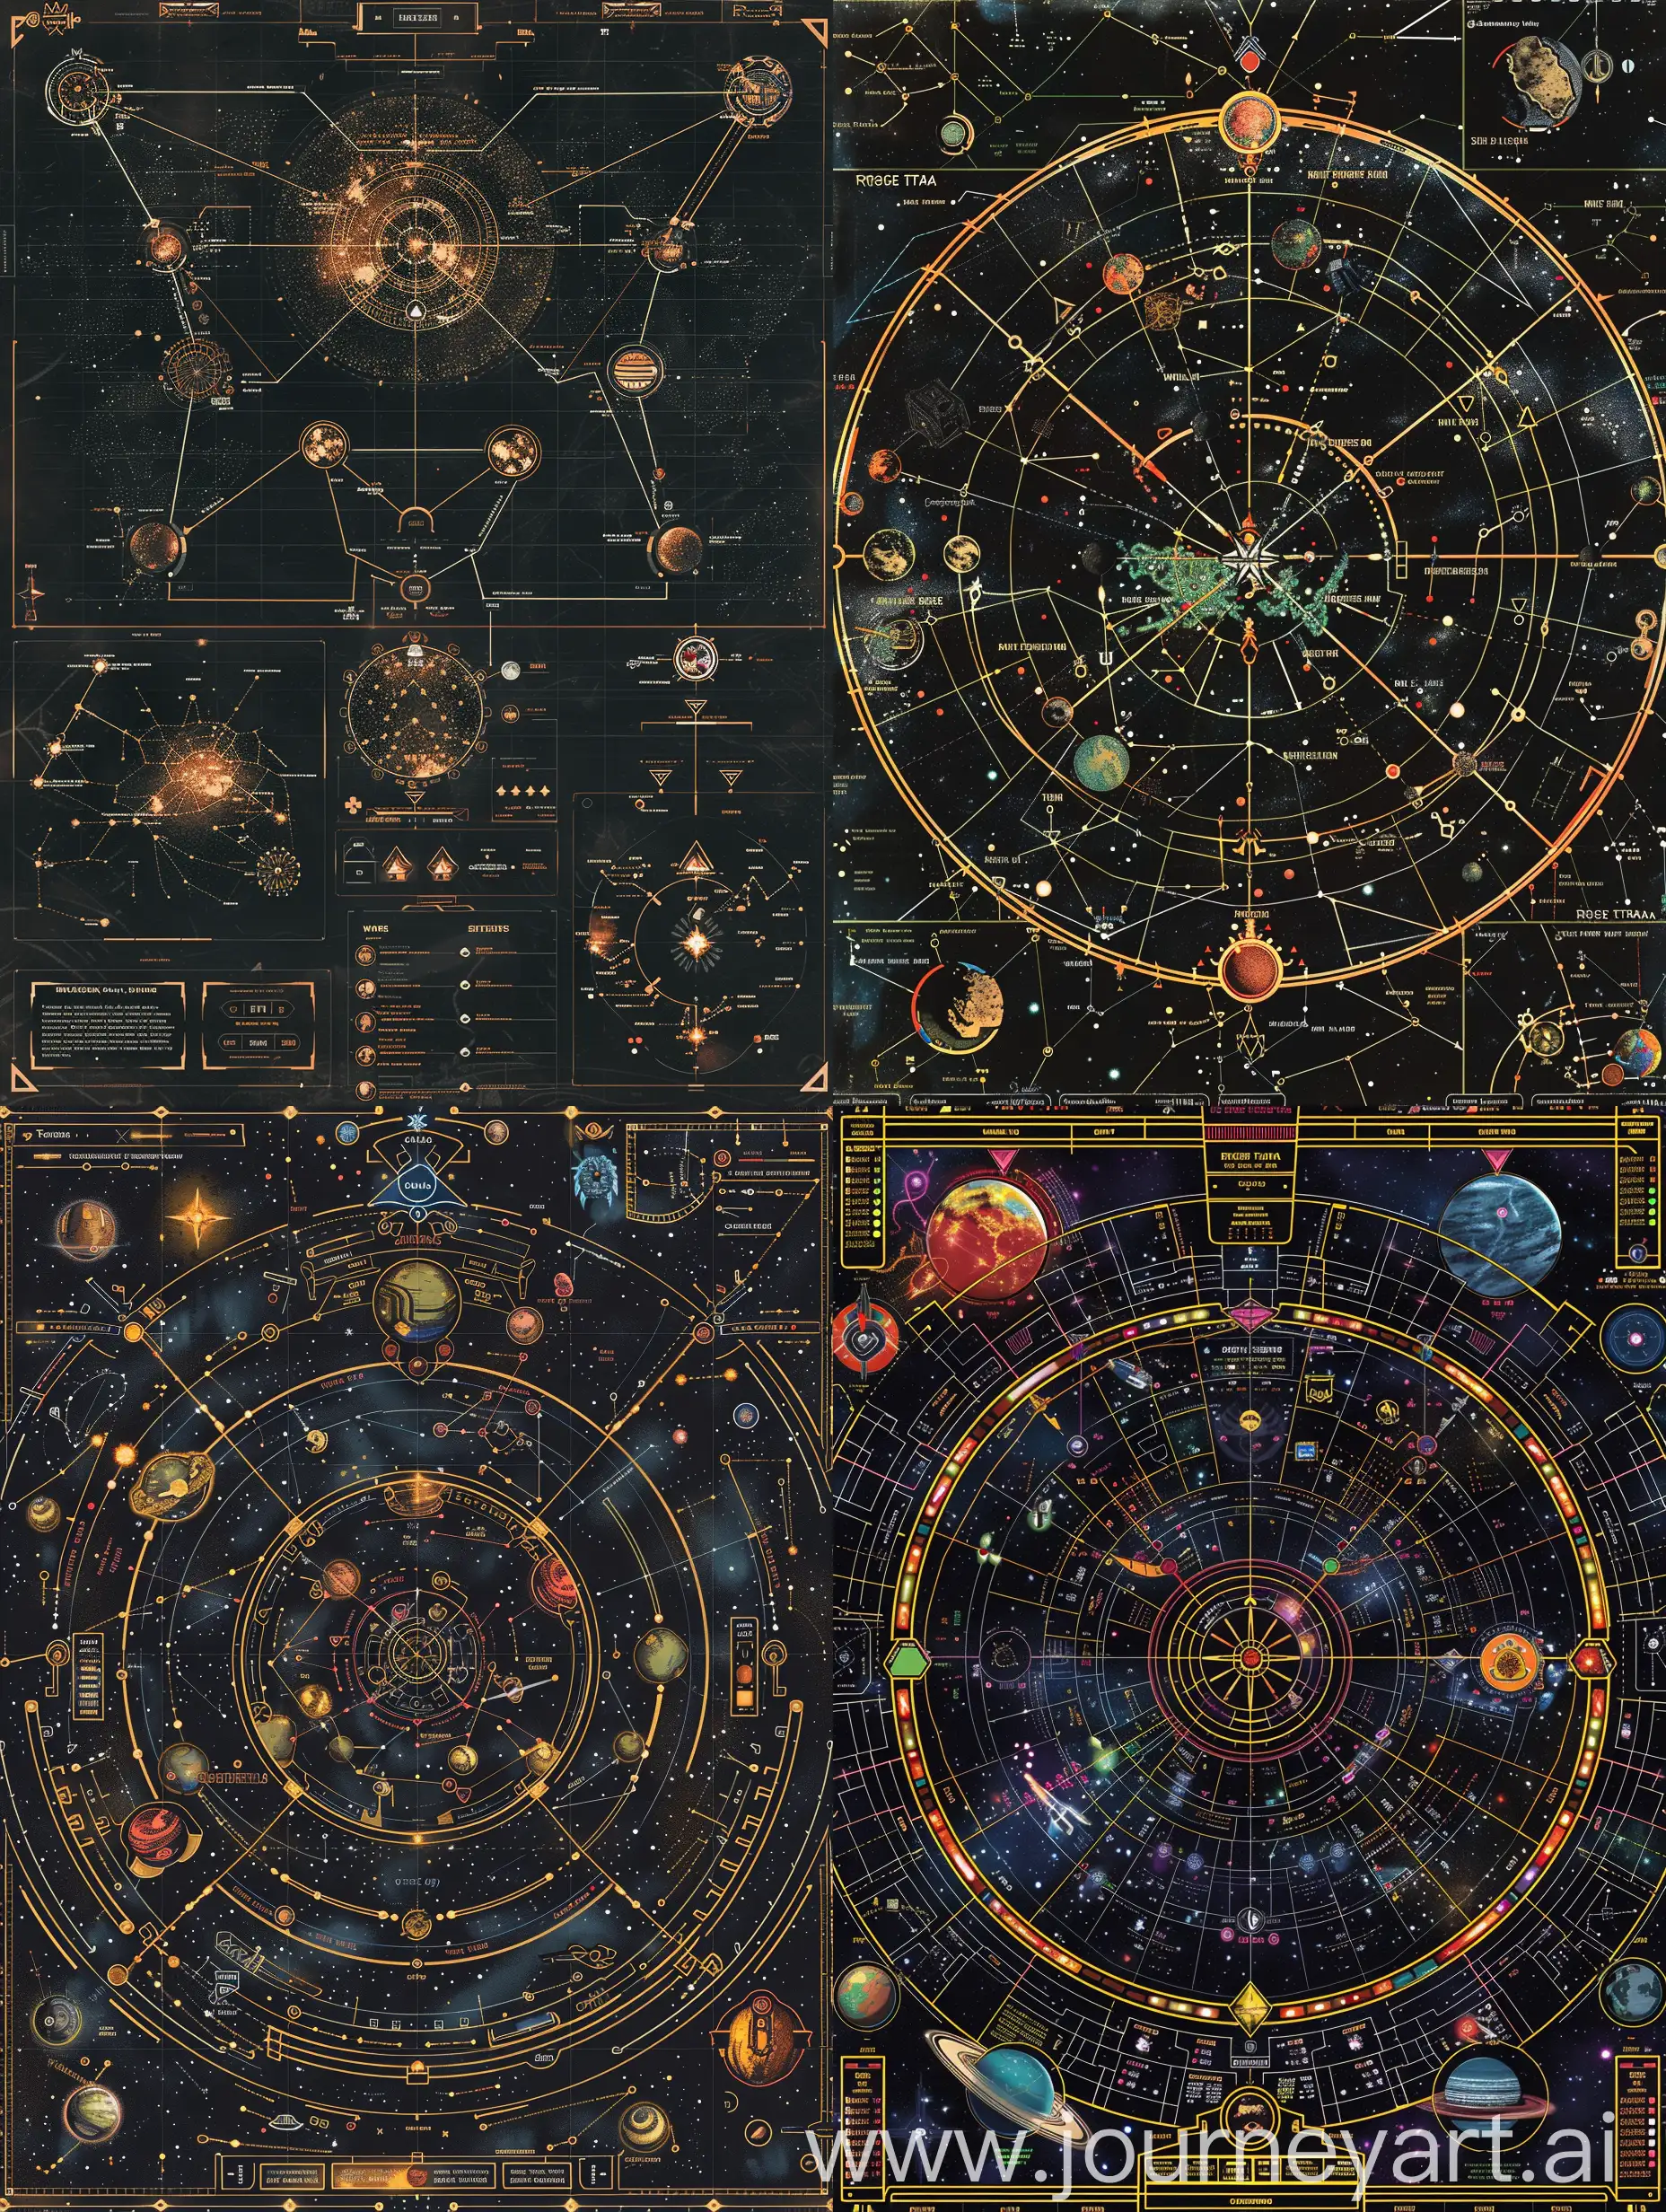 Тактическая карта для настольной ролевой игры в стиле Warhammer 40000: Rogue Trade, карта звездной системы, разделенние на разные сектора, с множеством планет, звездными путями, варп-маршрутами, стиль навигаторского  интерфейса, вид сверху.